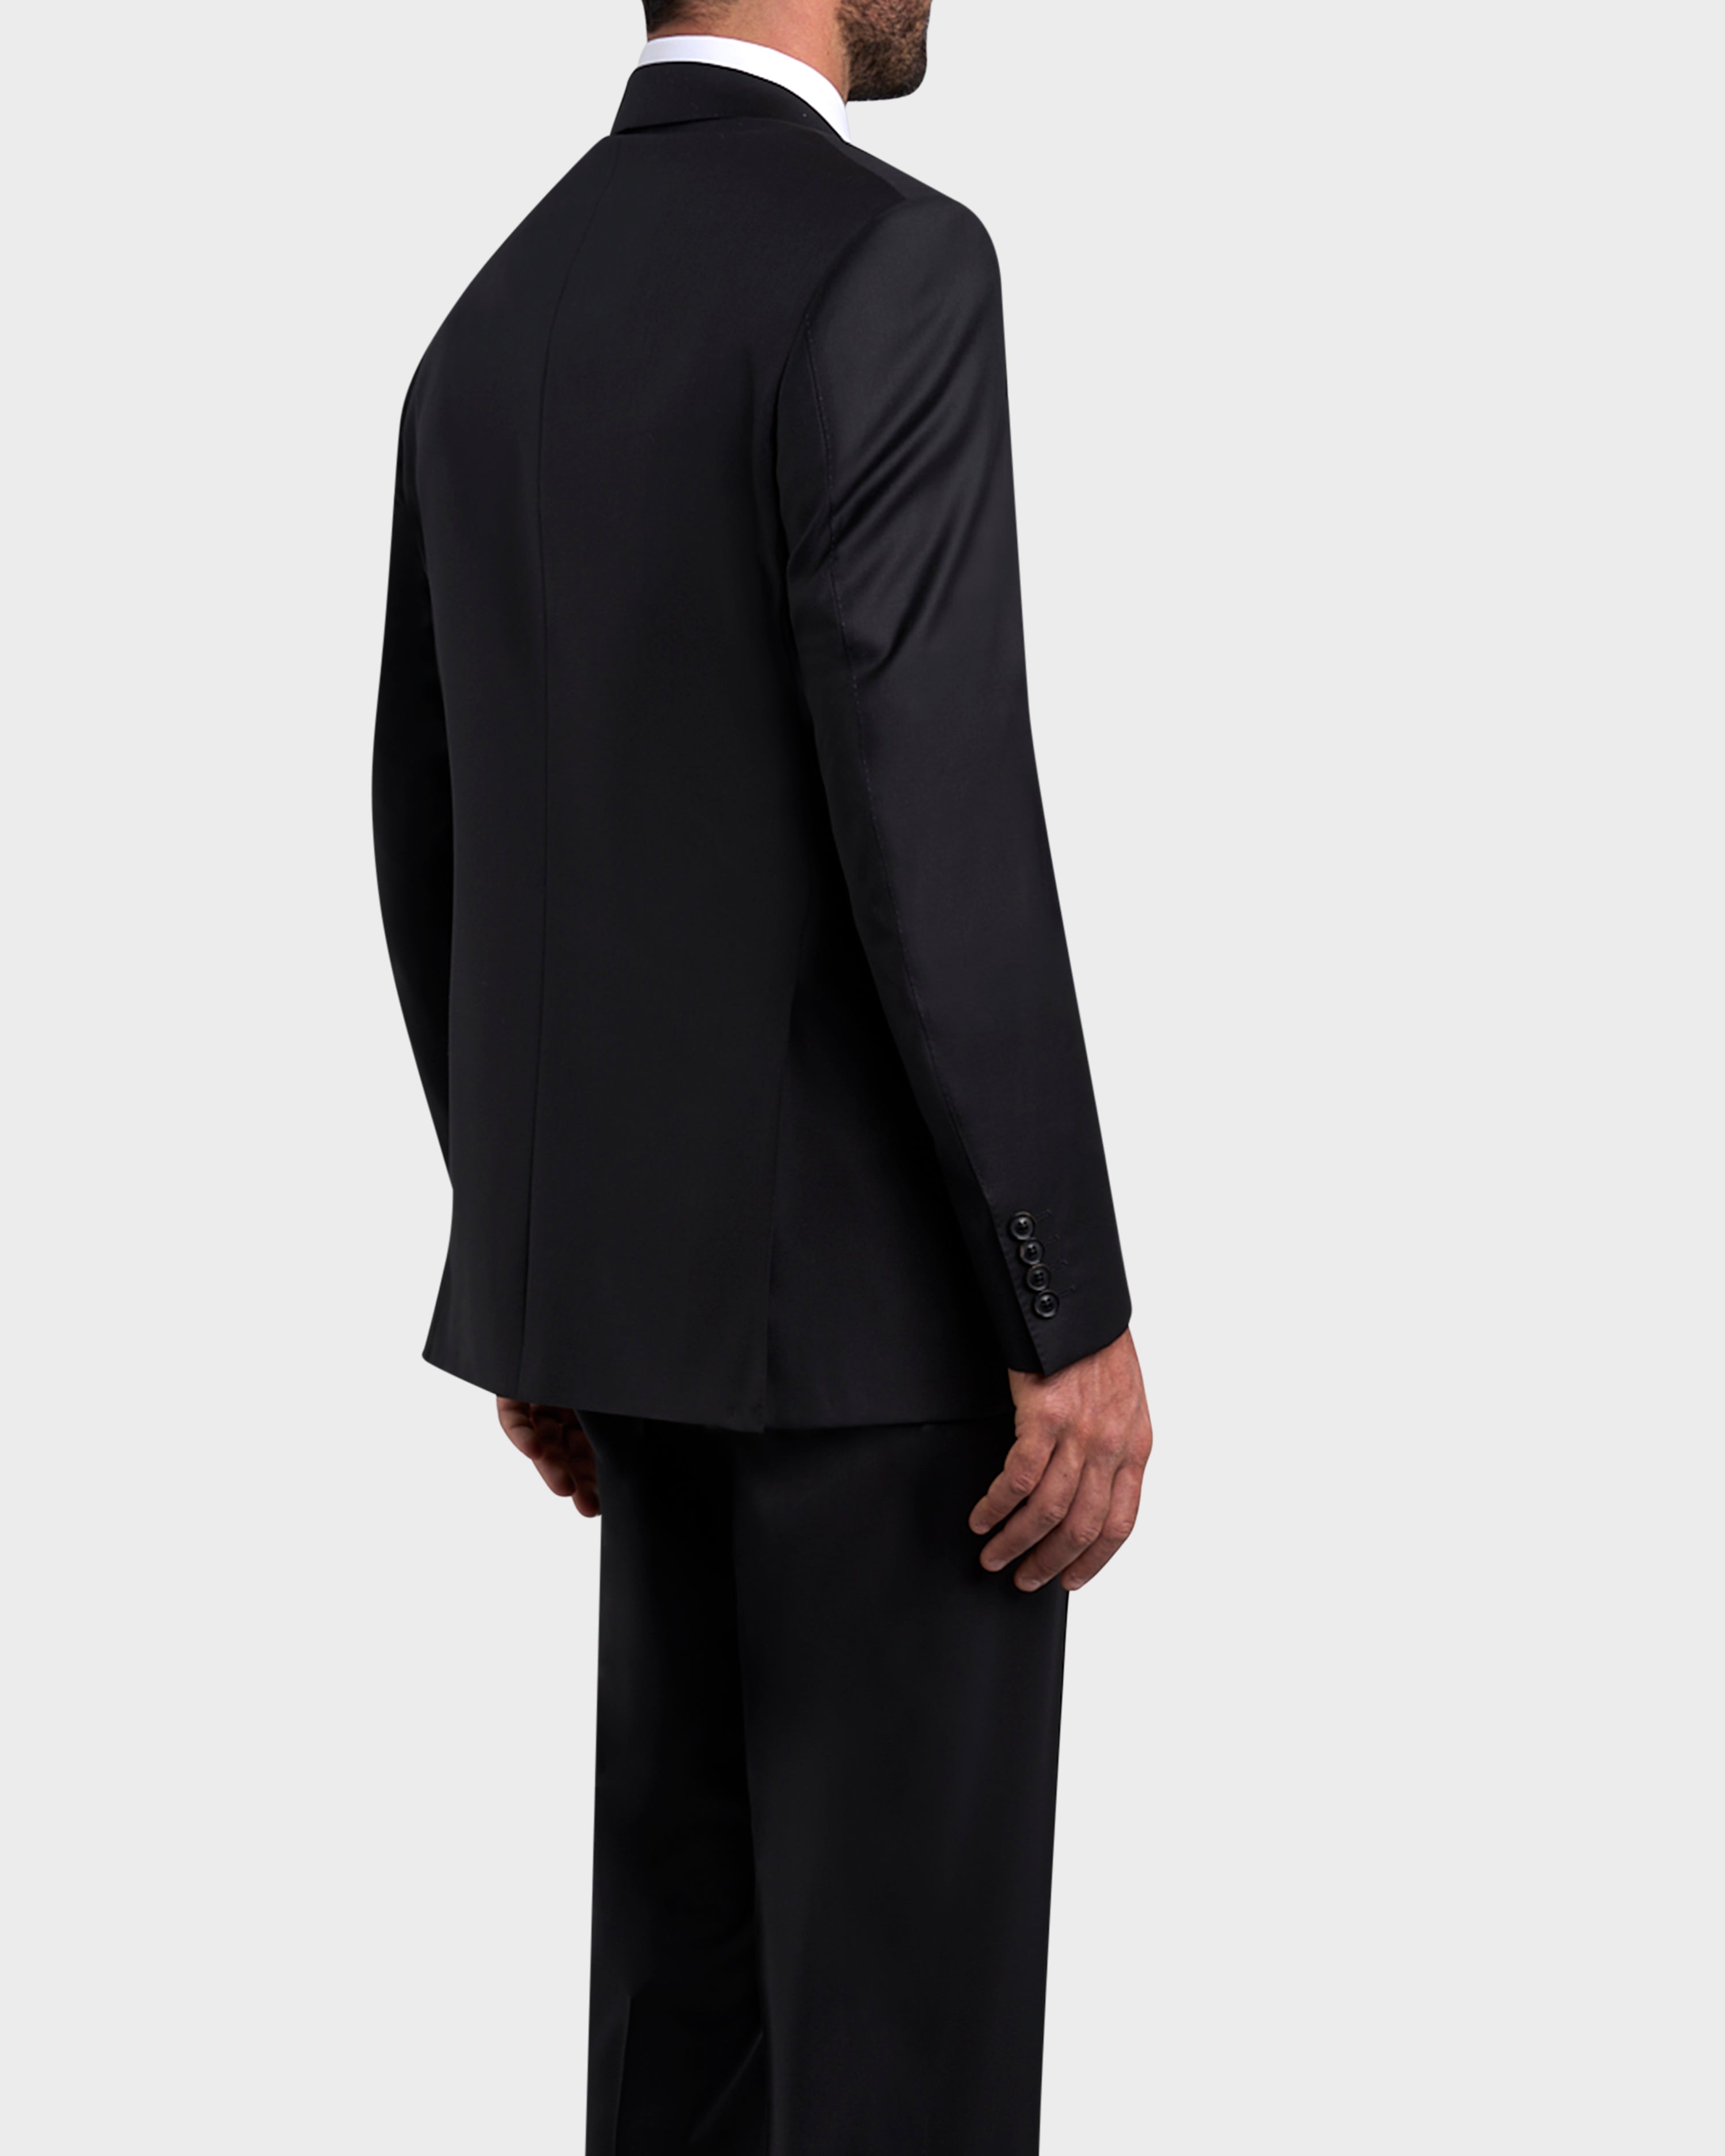 Black Super 150s Wool Suit